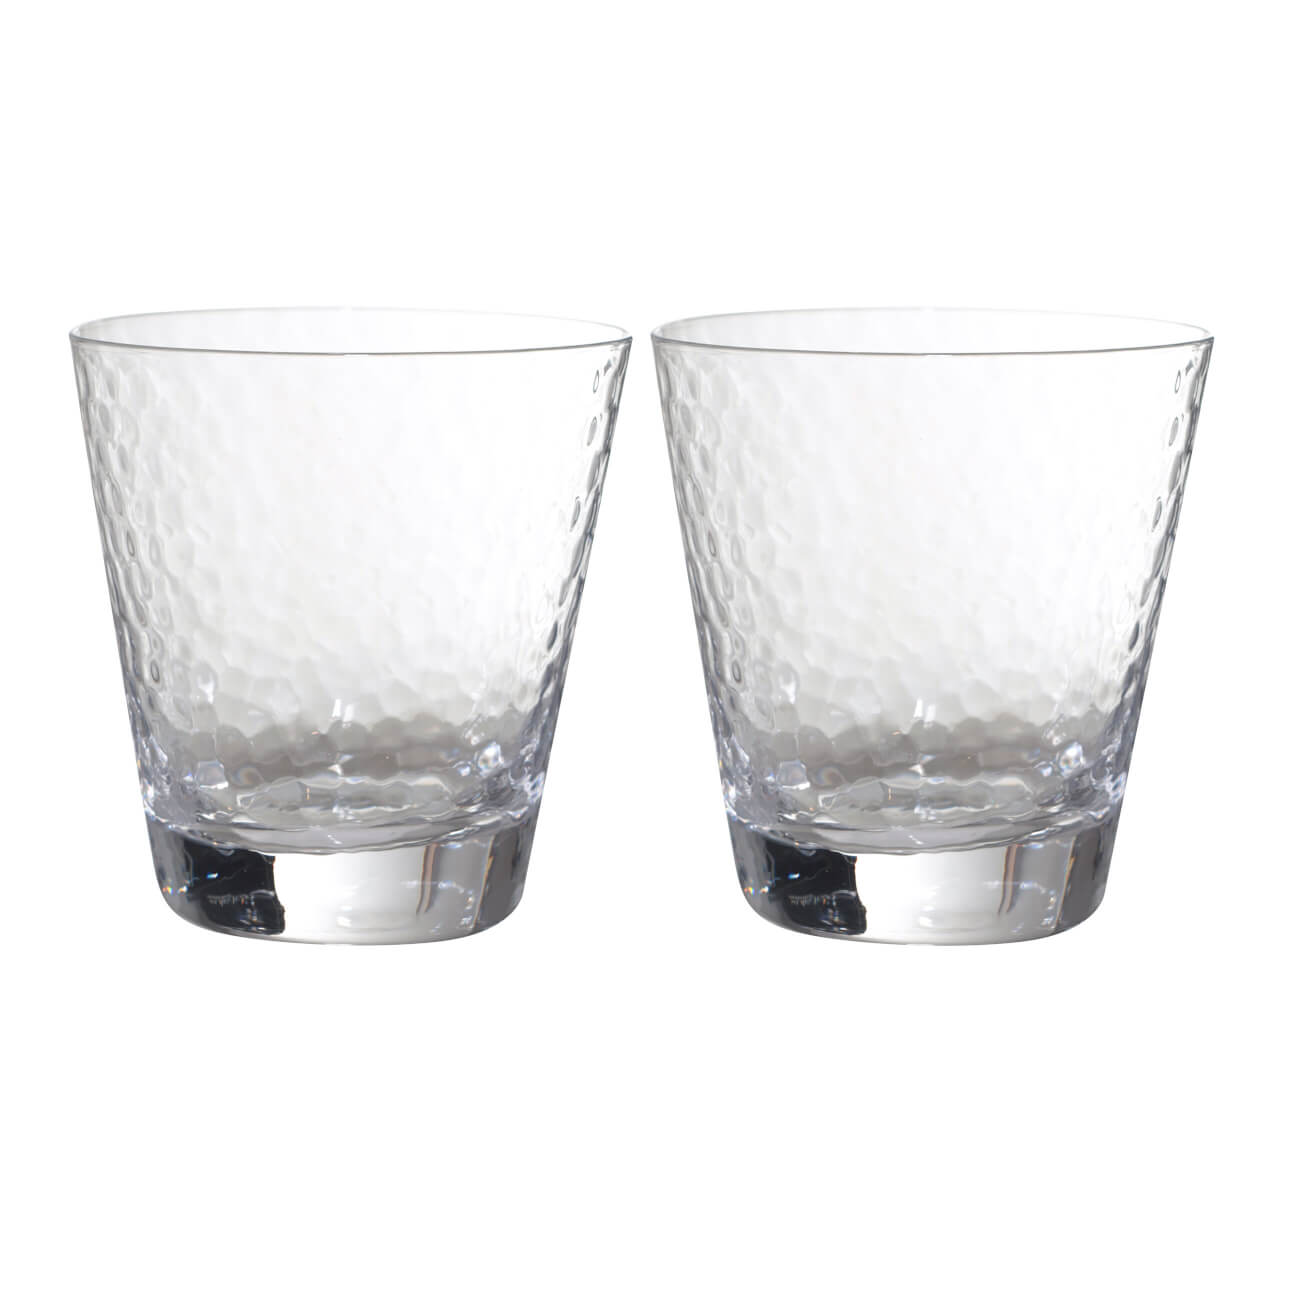 стакан для виски 270 мл 2 шт стекло перламутр ripply polar Стакан для виски, 270 мл, 2 шт, стекло, Ripply